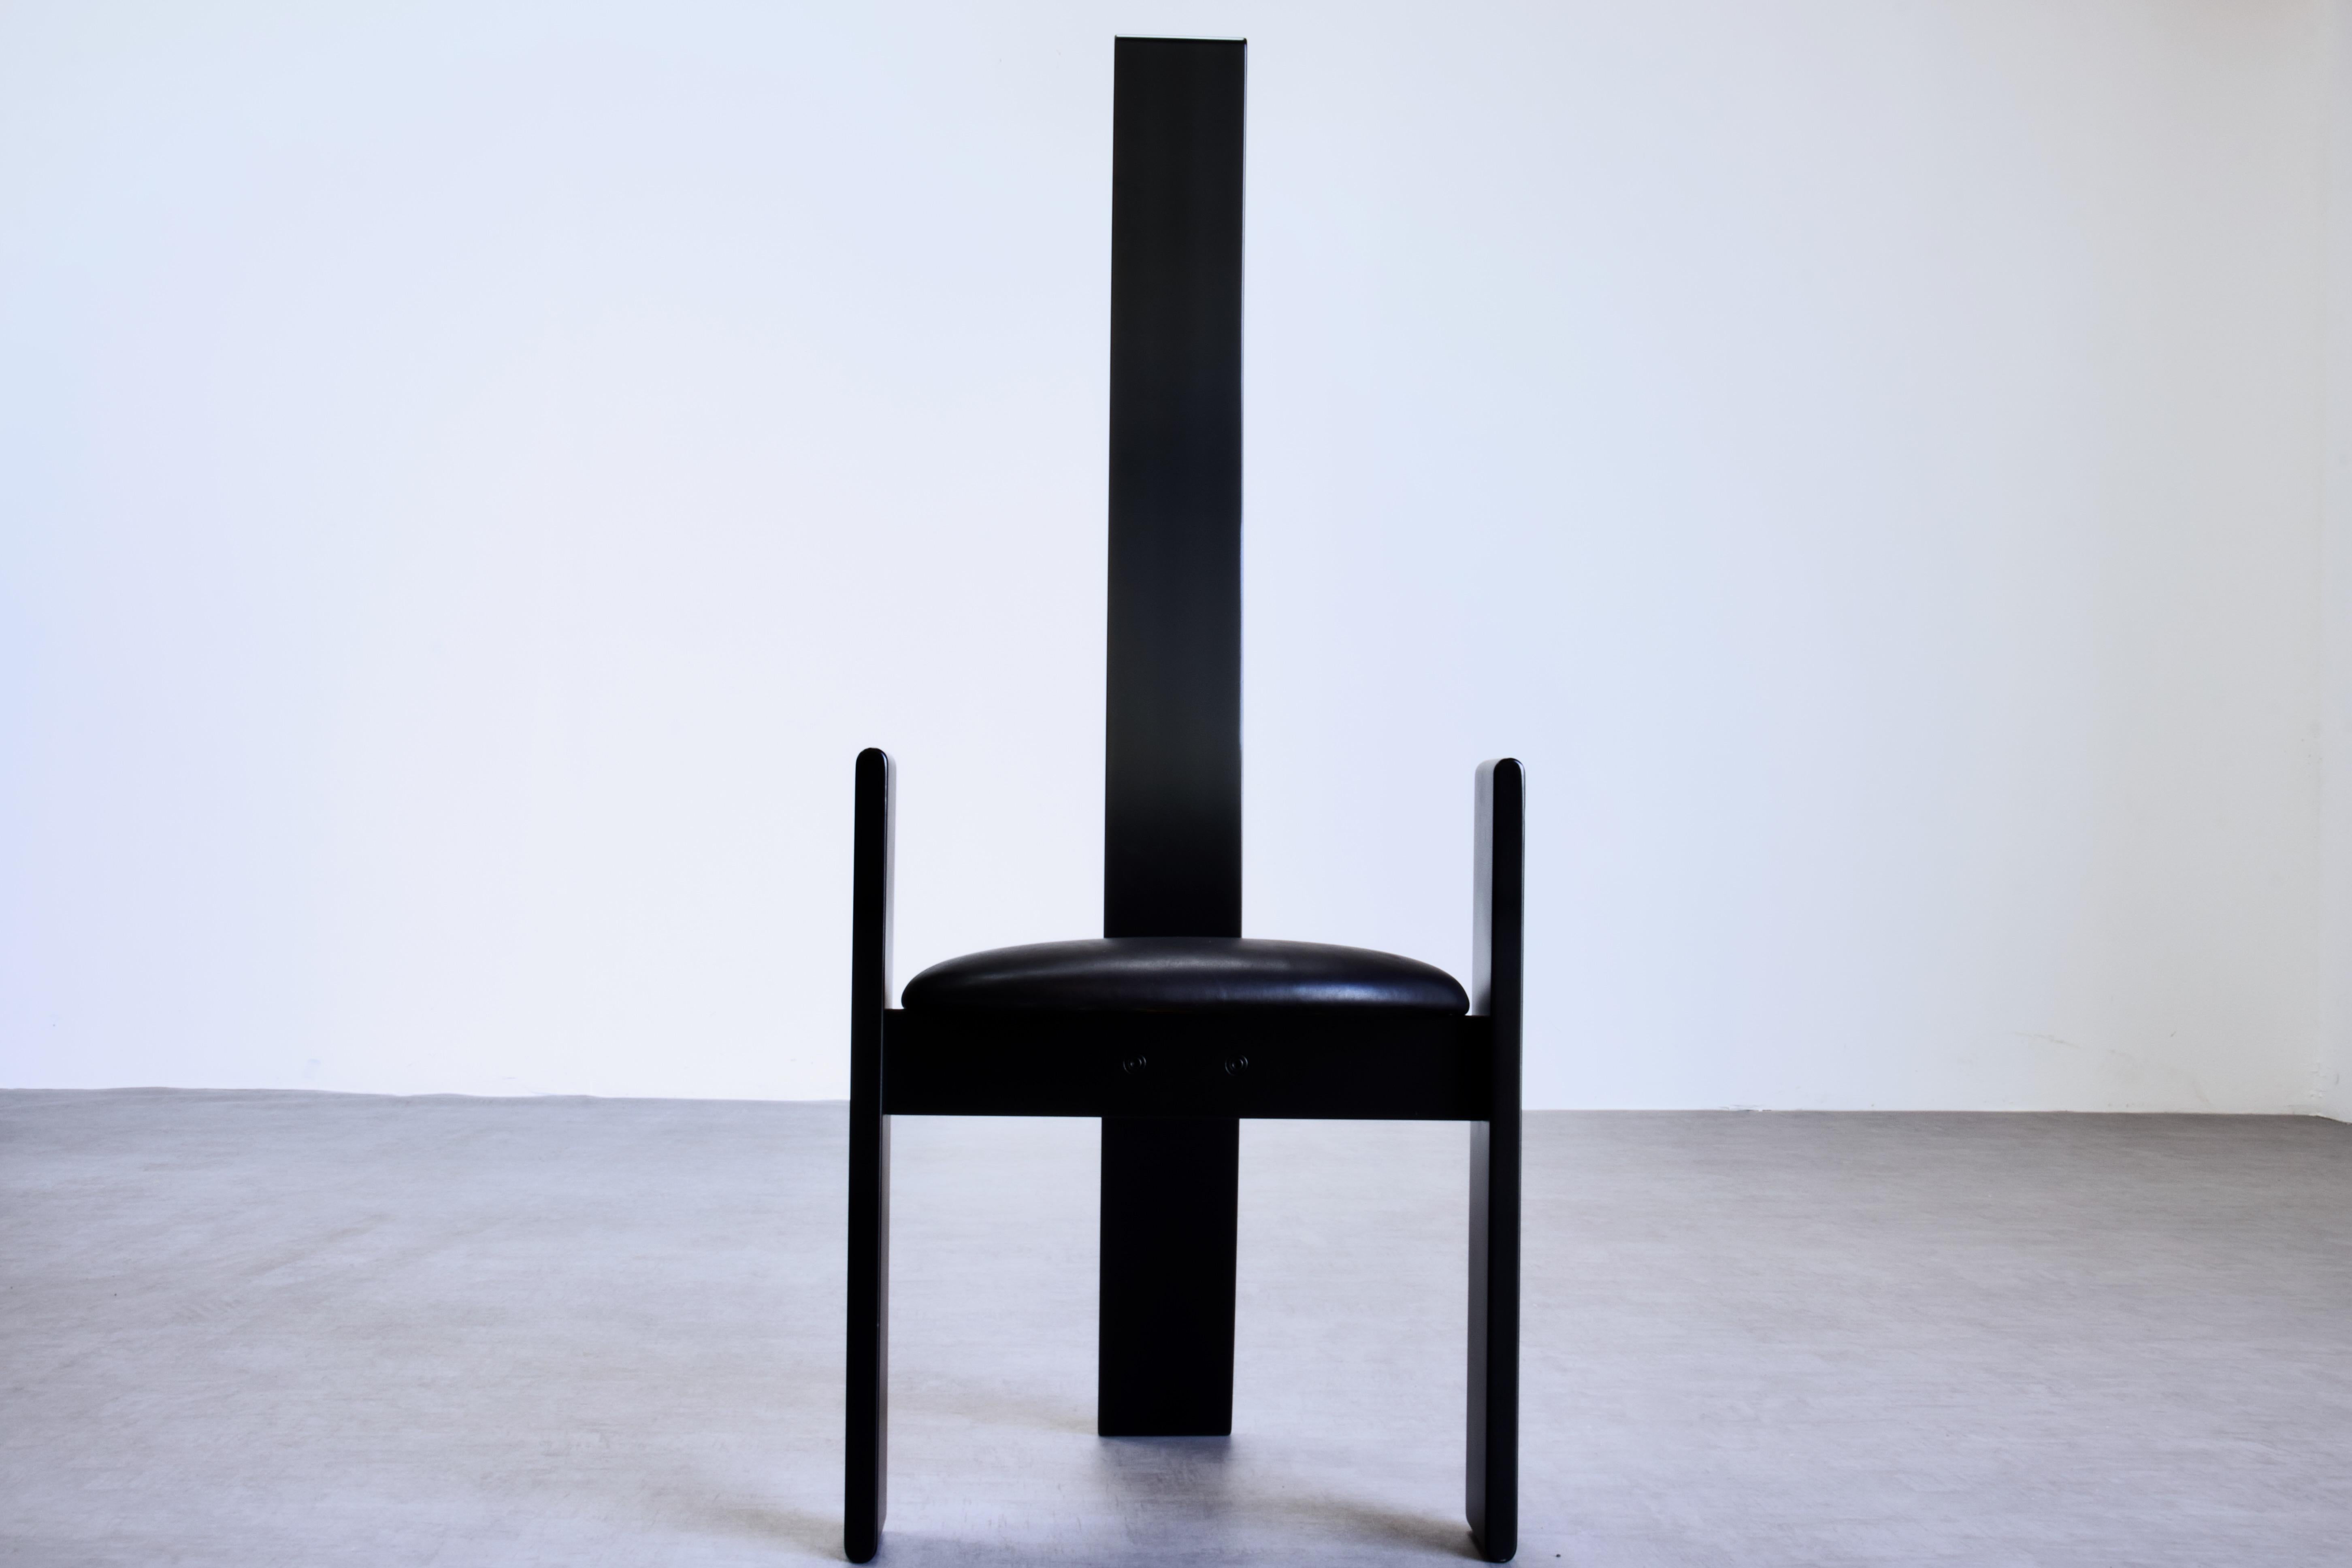 Paire de superbes chaises Golem SD51 à haut dossier de Vico Magistretti pour Poggi, 1969 Italie. Cette chaise post-moderne reprend l'esthétique moderne du milieu du siècle de Carlo, Afra et Tobia Scarpa. 

Les chaises sont fabriquées en hêtre cintré